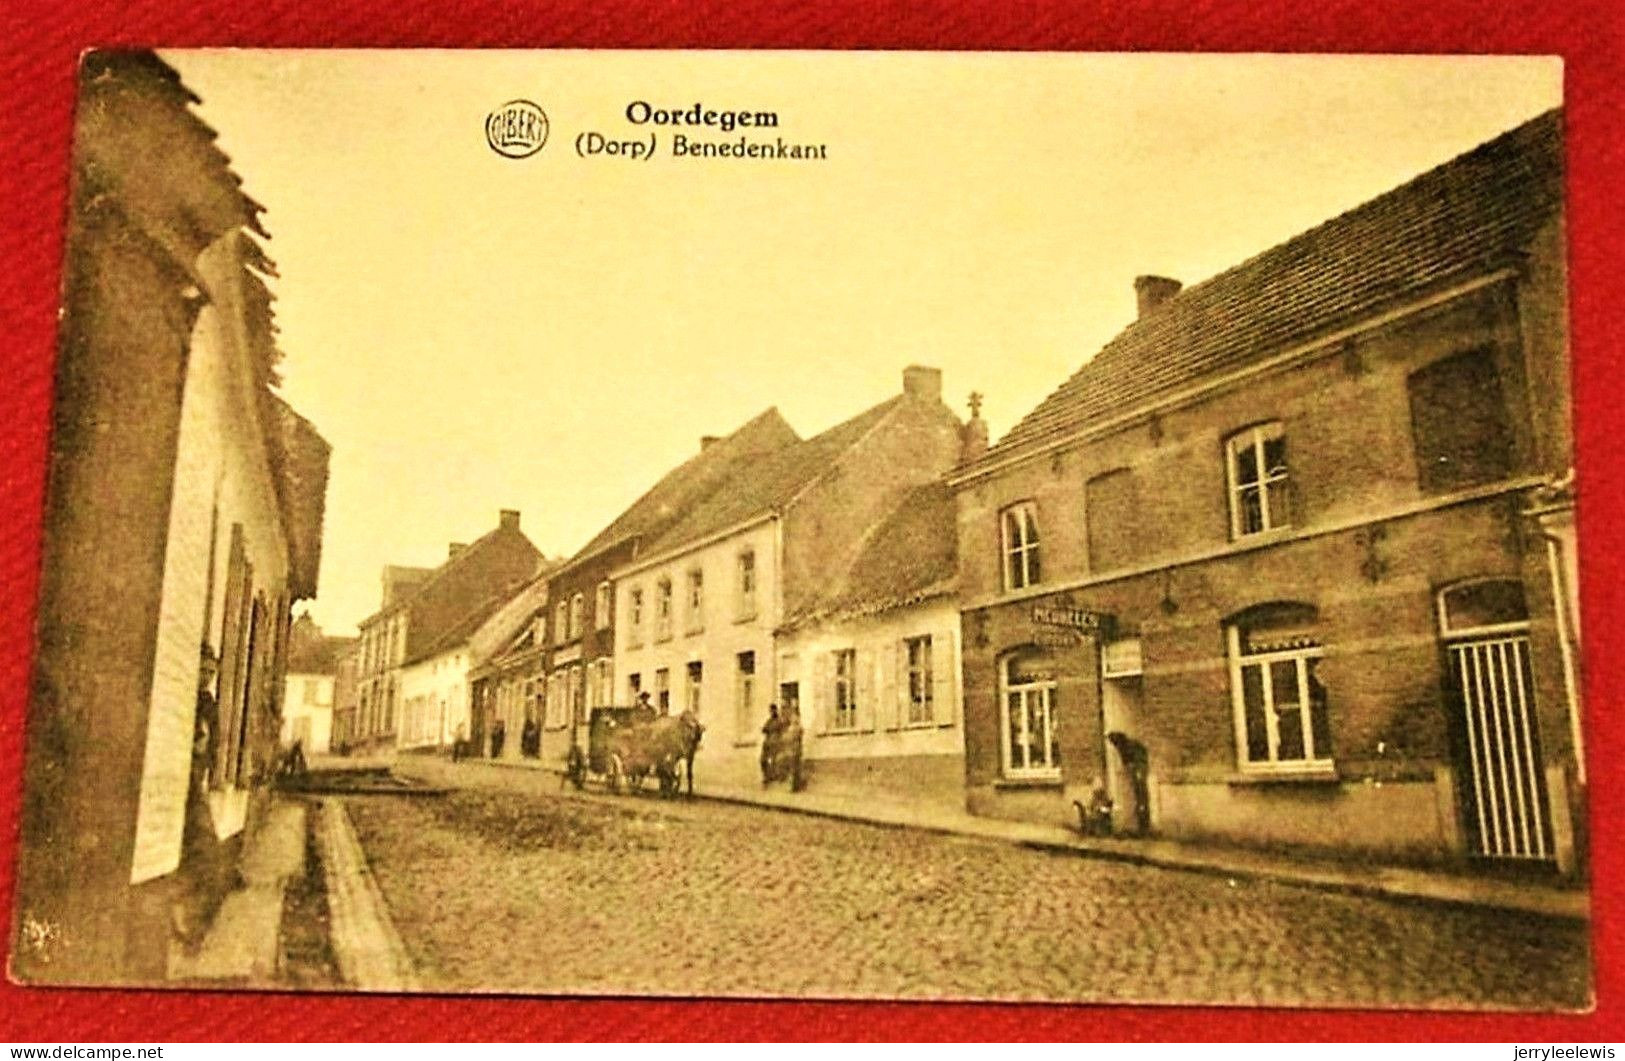 OORDEGEM (dorp) -  Benedenkant - Lede